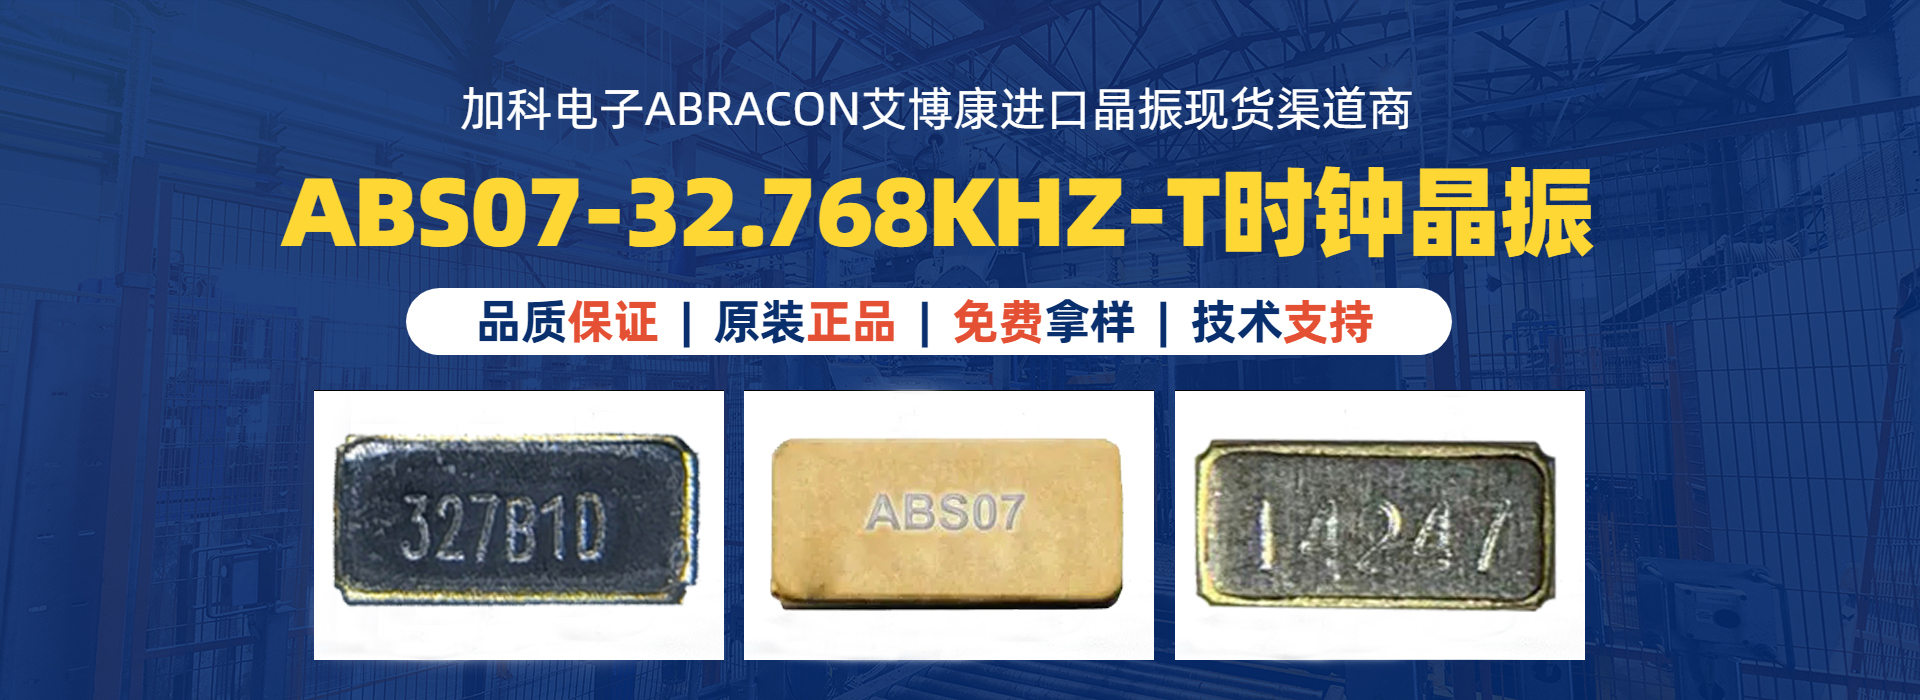 ABS07-32.768KHZ-T晶振时钟模块的最佳组合